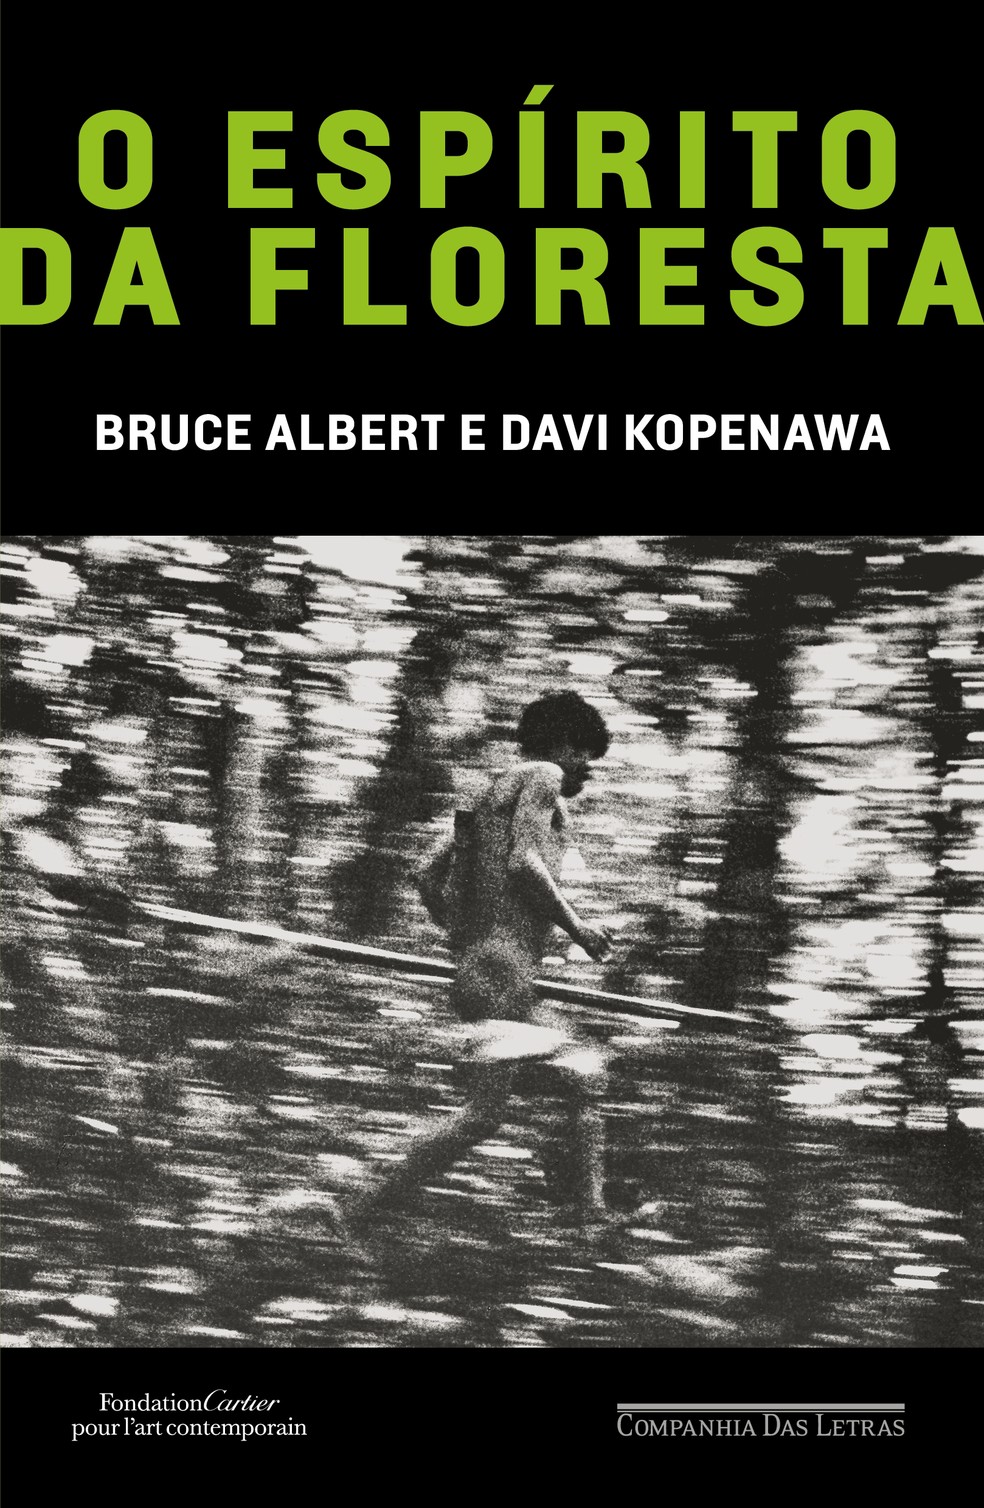 Capa de "O espírito da floresta", de Bruce Albert e Davi Kopenawa — Foto: Reprodução